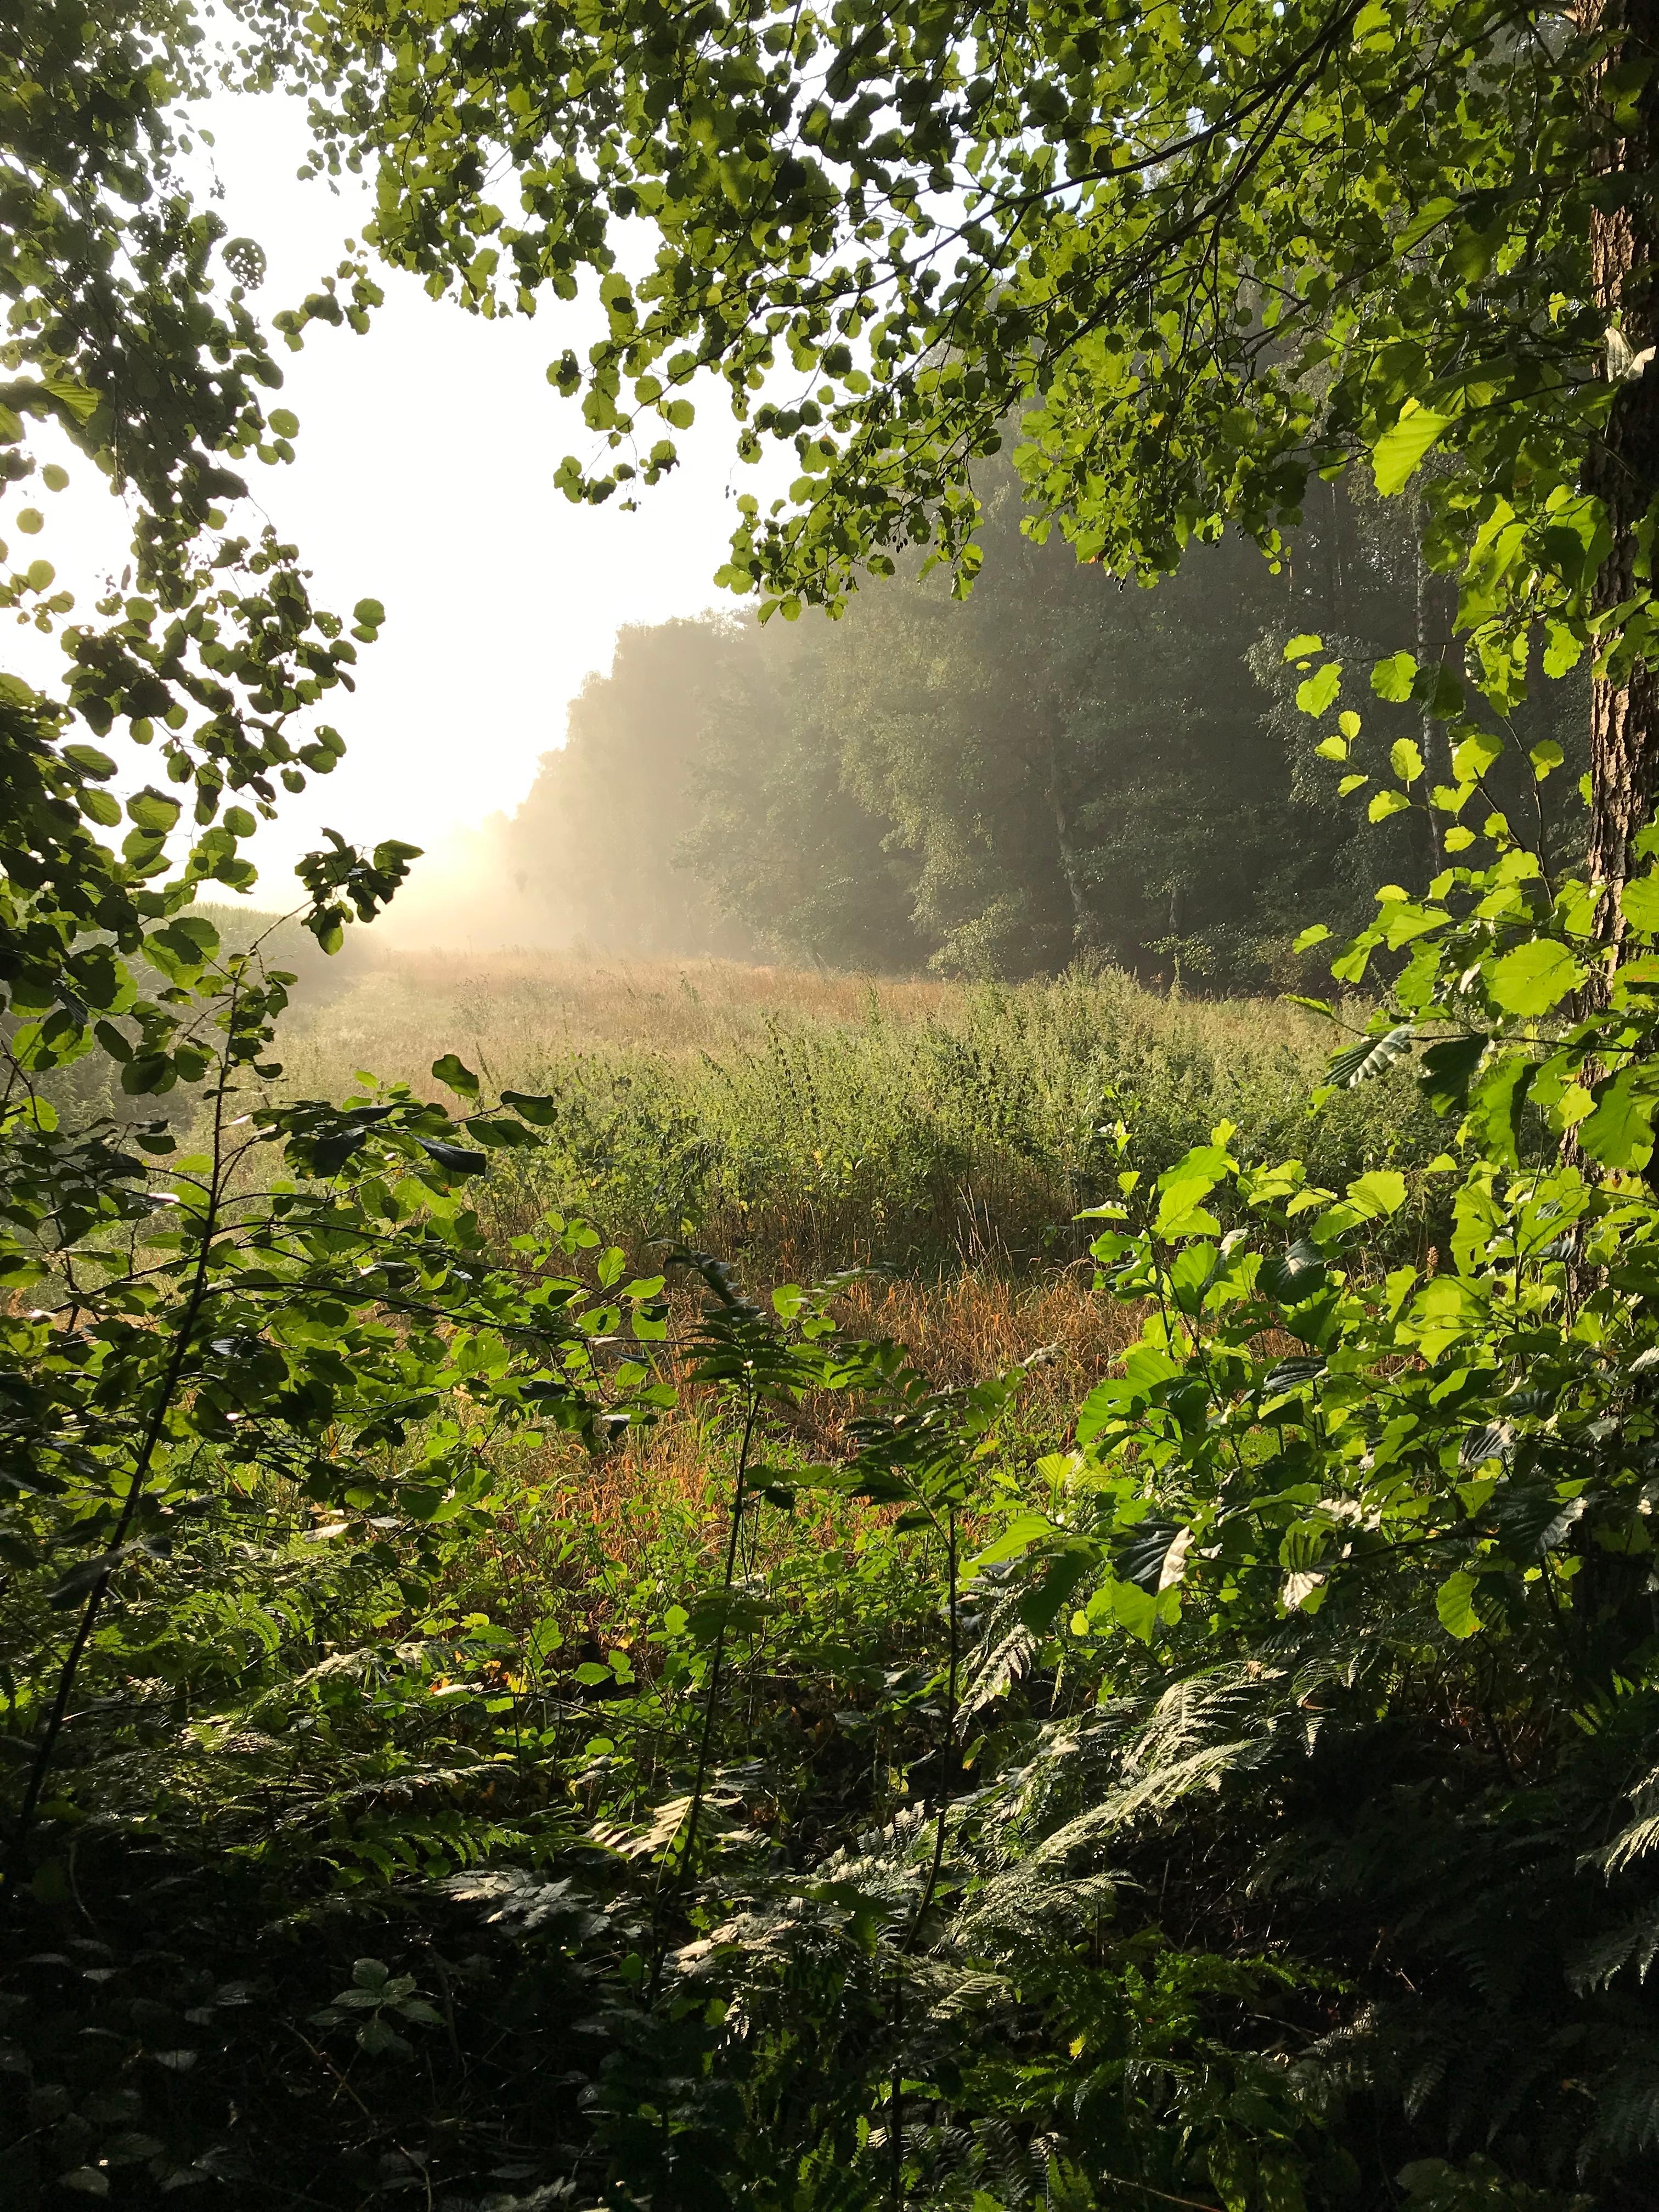 Morgenstimmung im Wald 🌳 
#Wald #Sonne #Nebel